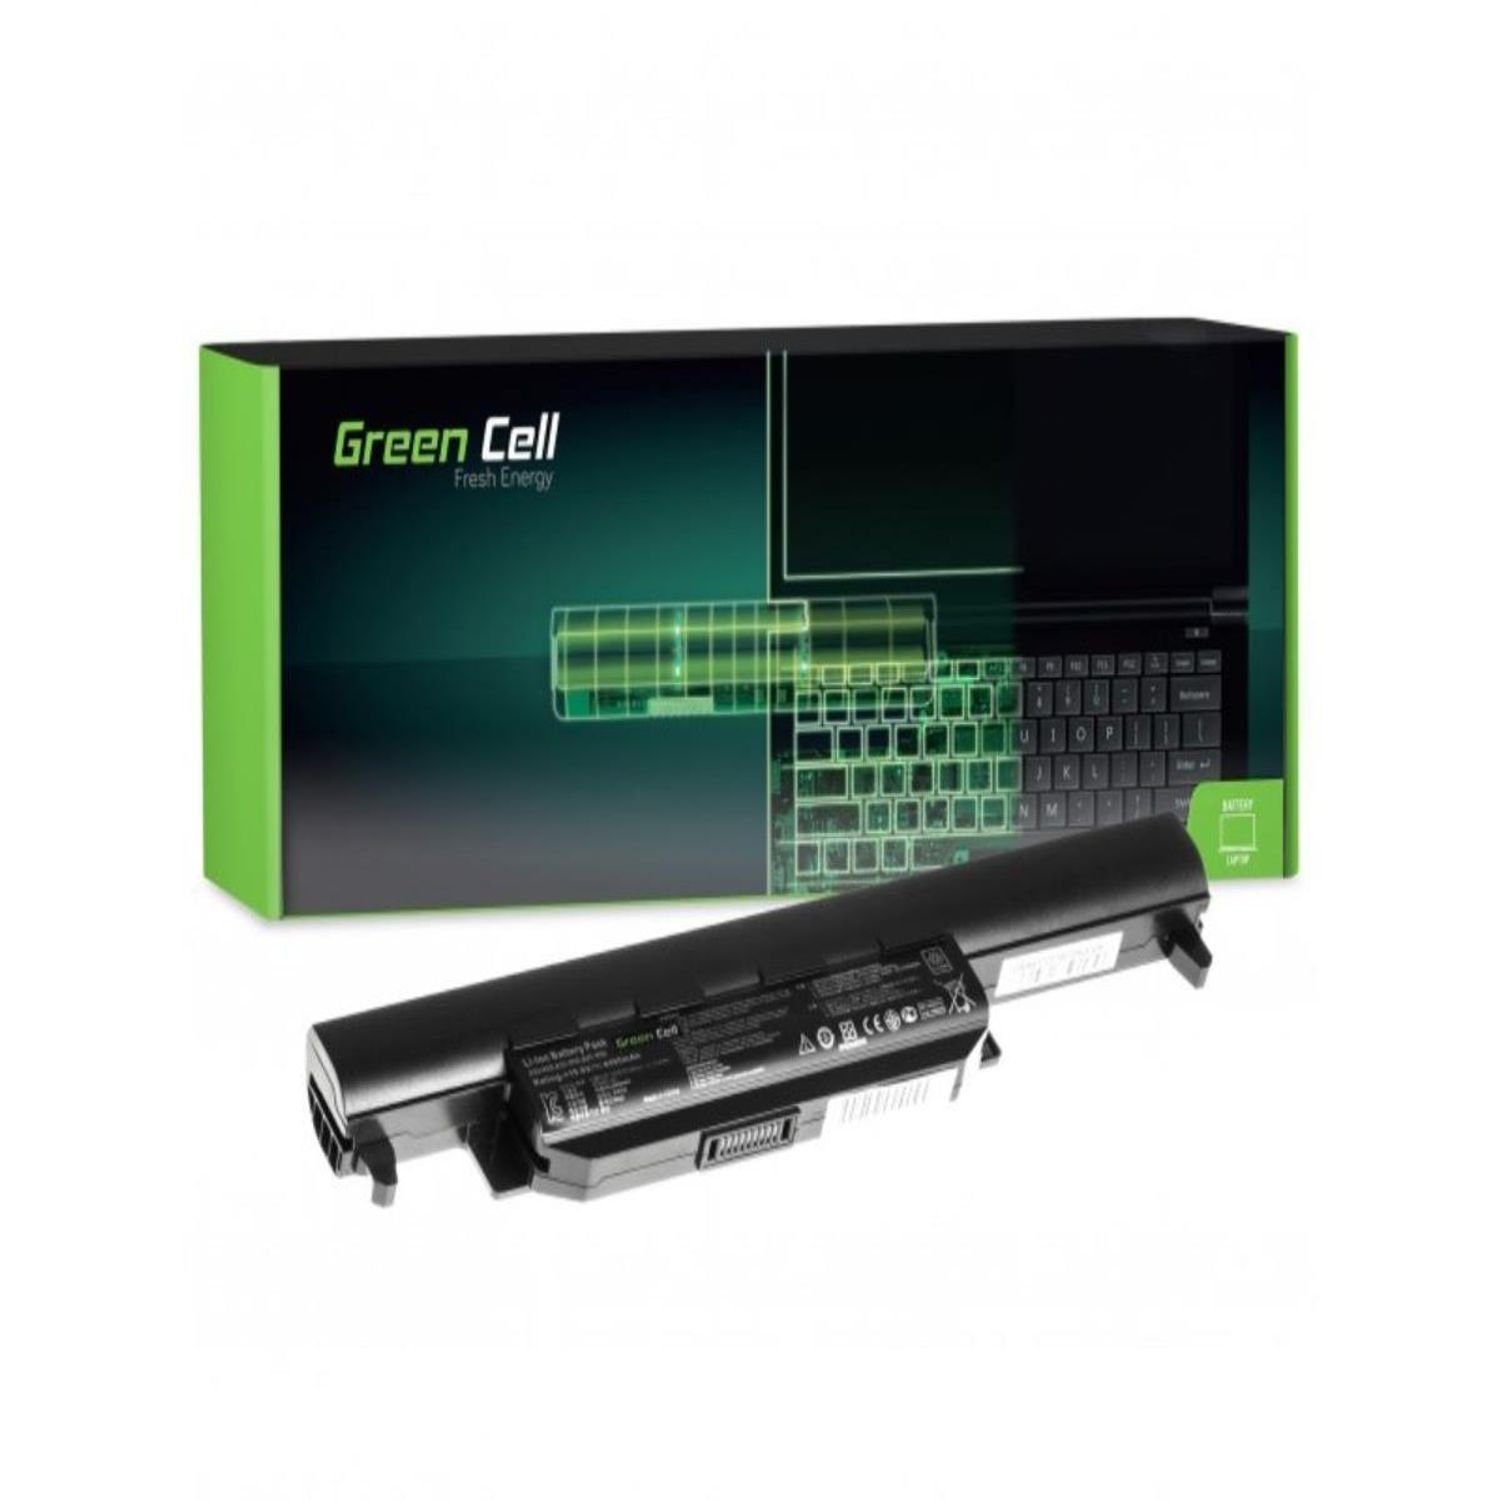 Asus Green Laptop-Akku Asus R500 R500V für A32-K55 R700 R500V R400 Laptops K55A K55 Cell K55VJ K55VM K55VD AS37, Akku